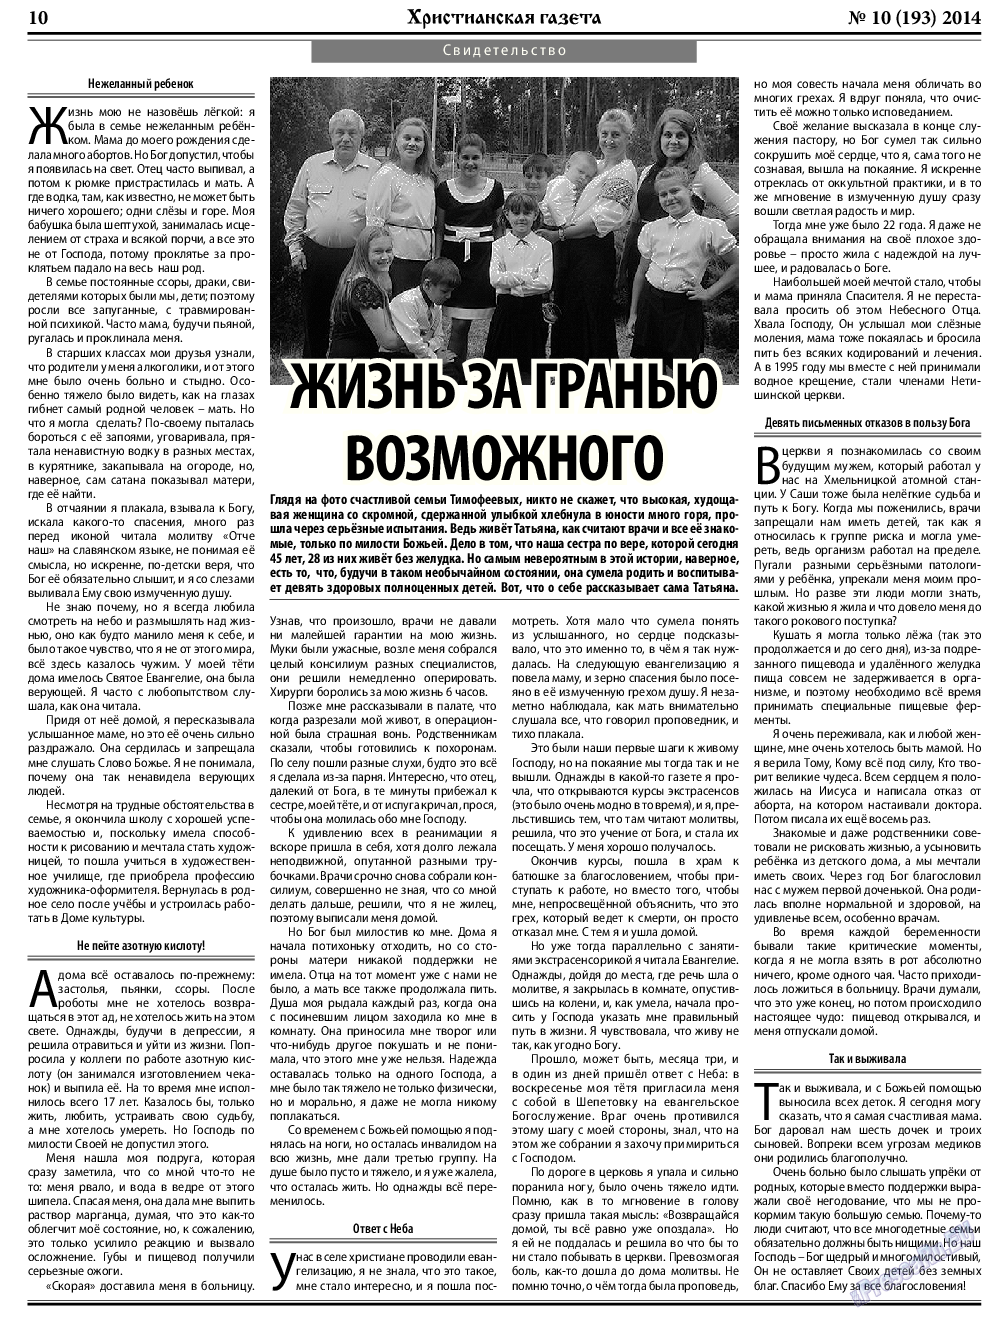 Христианская газета, газета. 2014 №10 стр.10